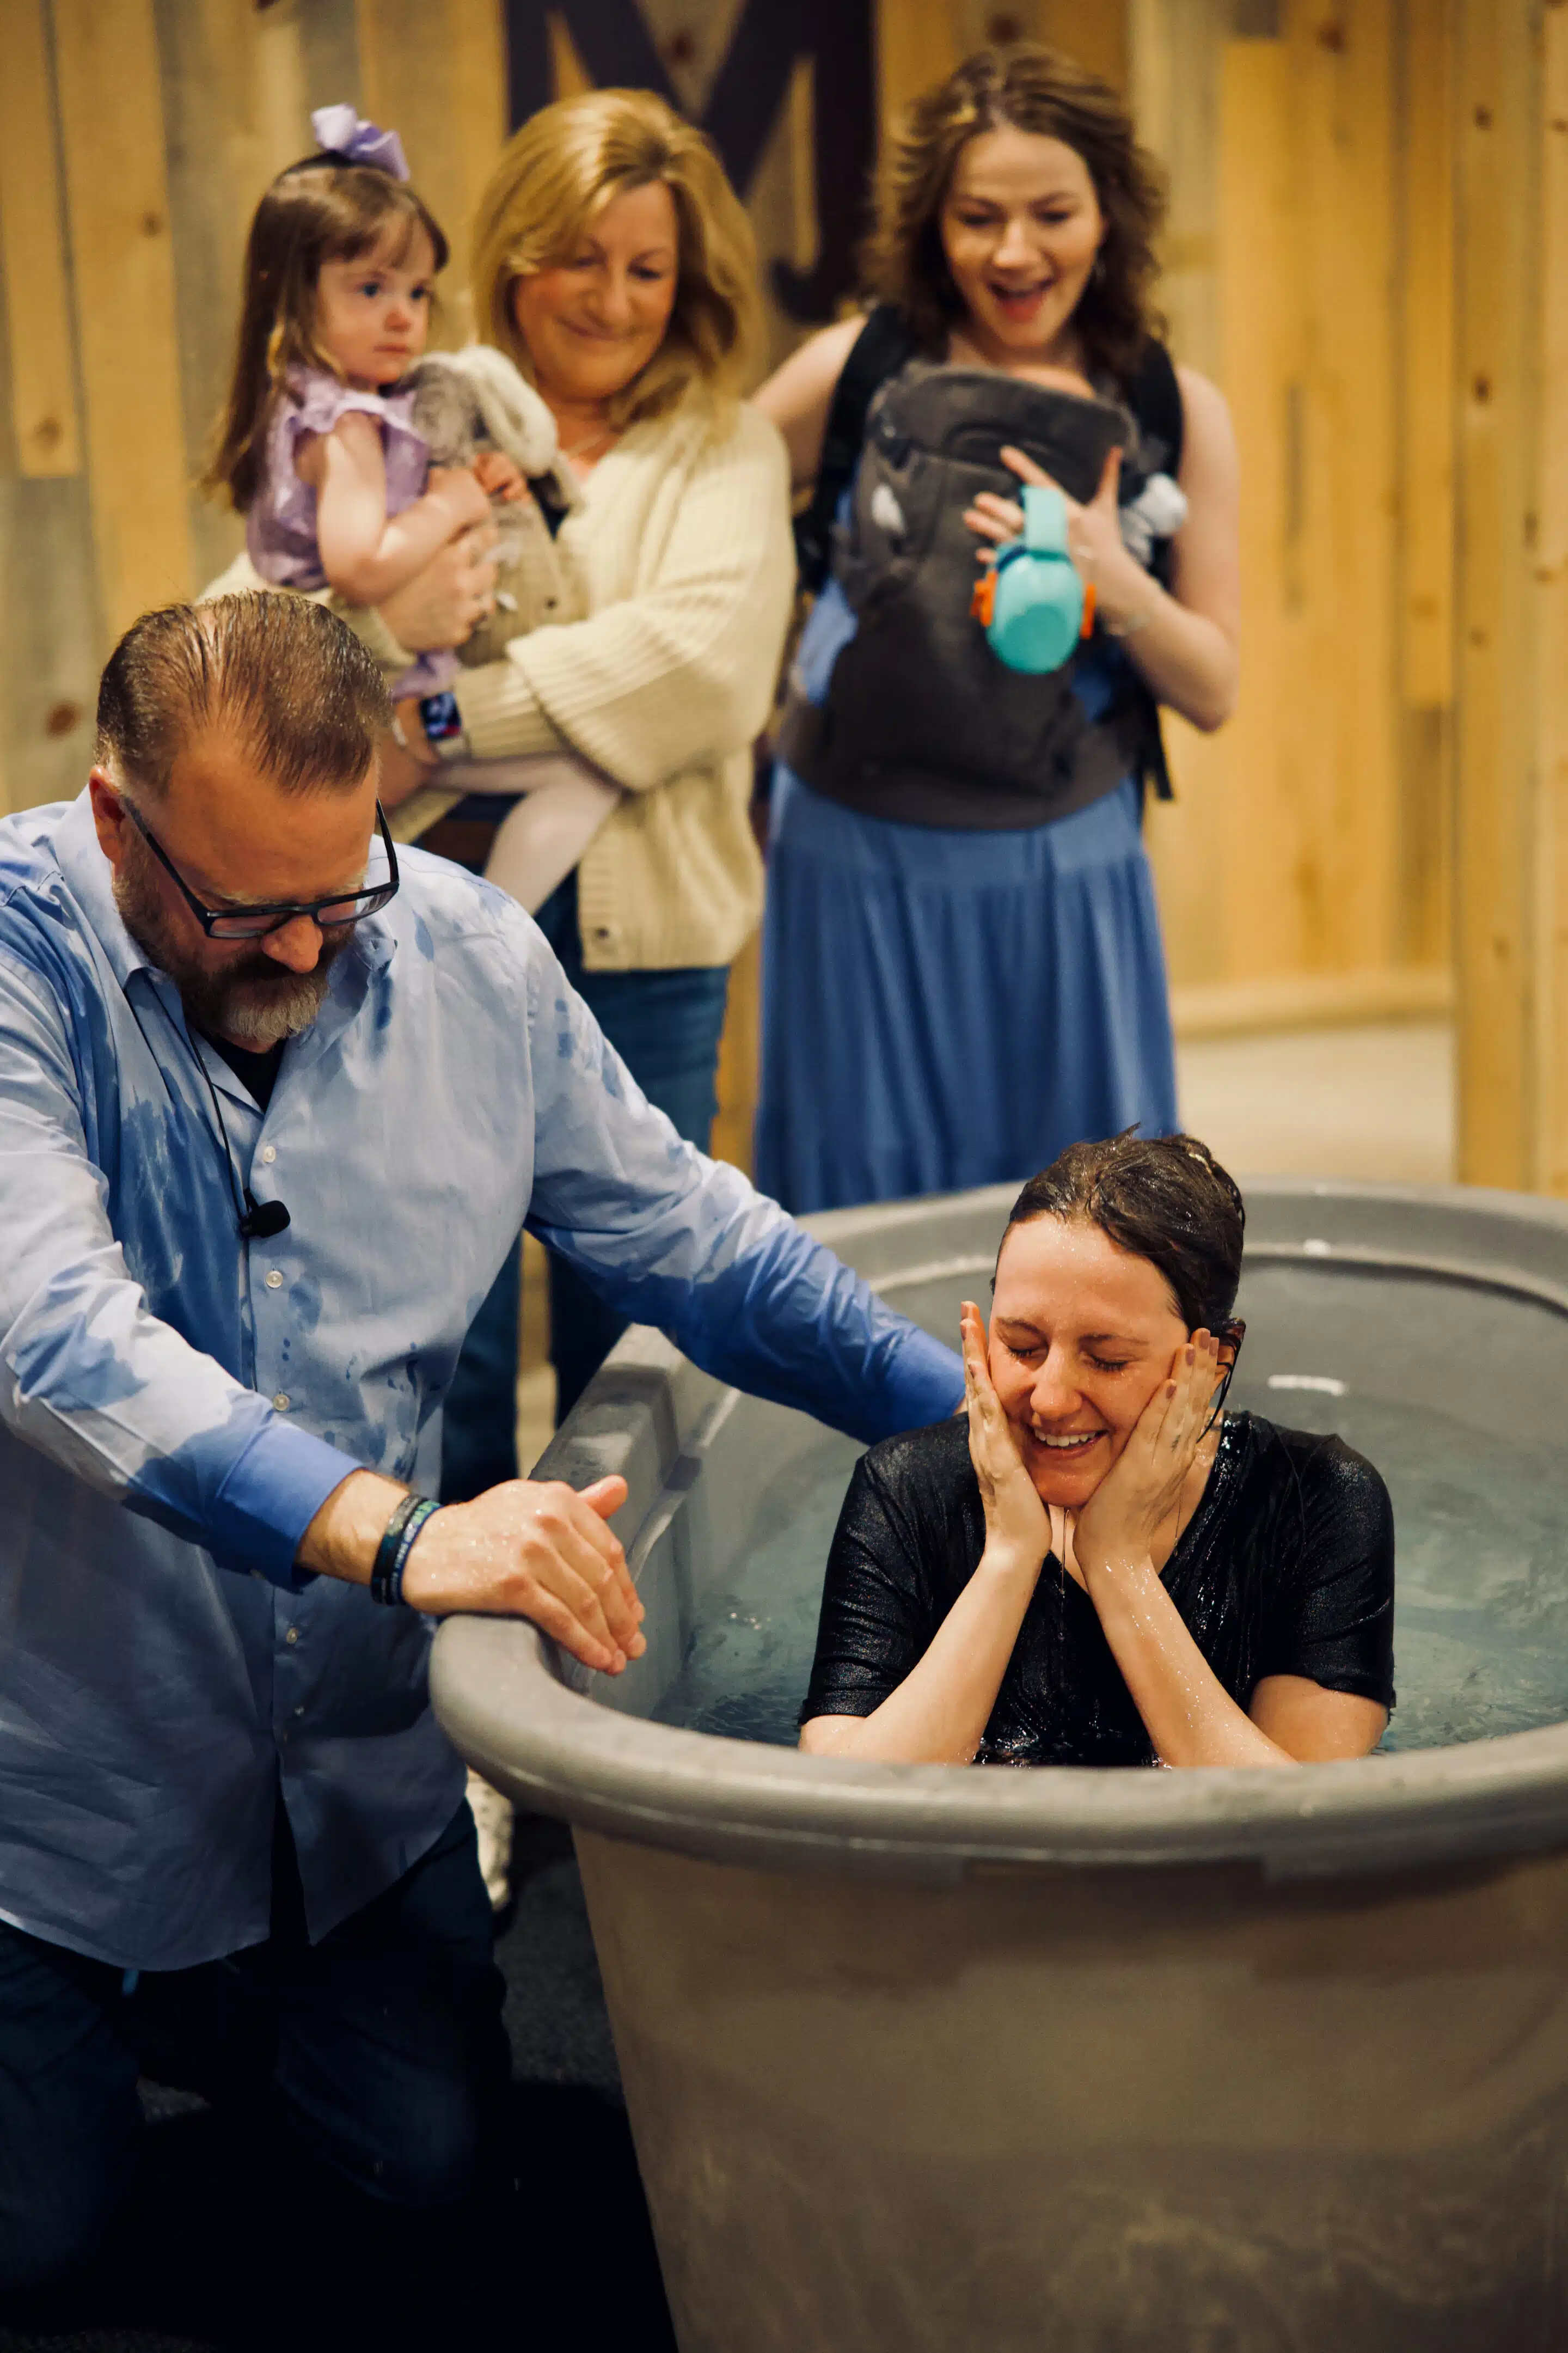 Baptism at Renovation Church